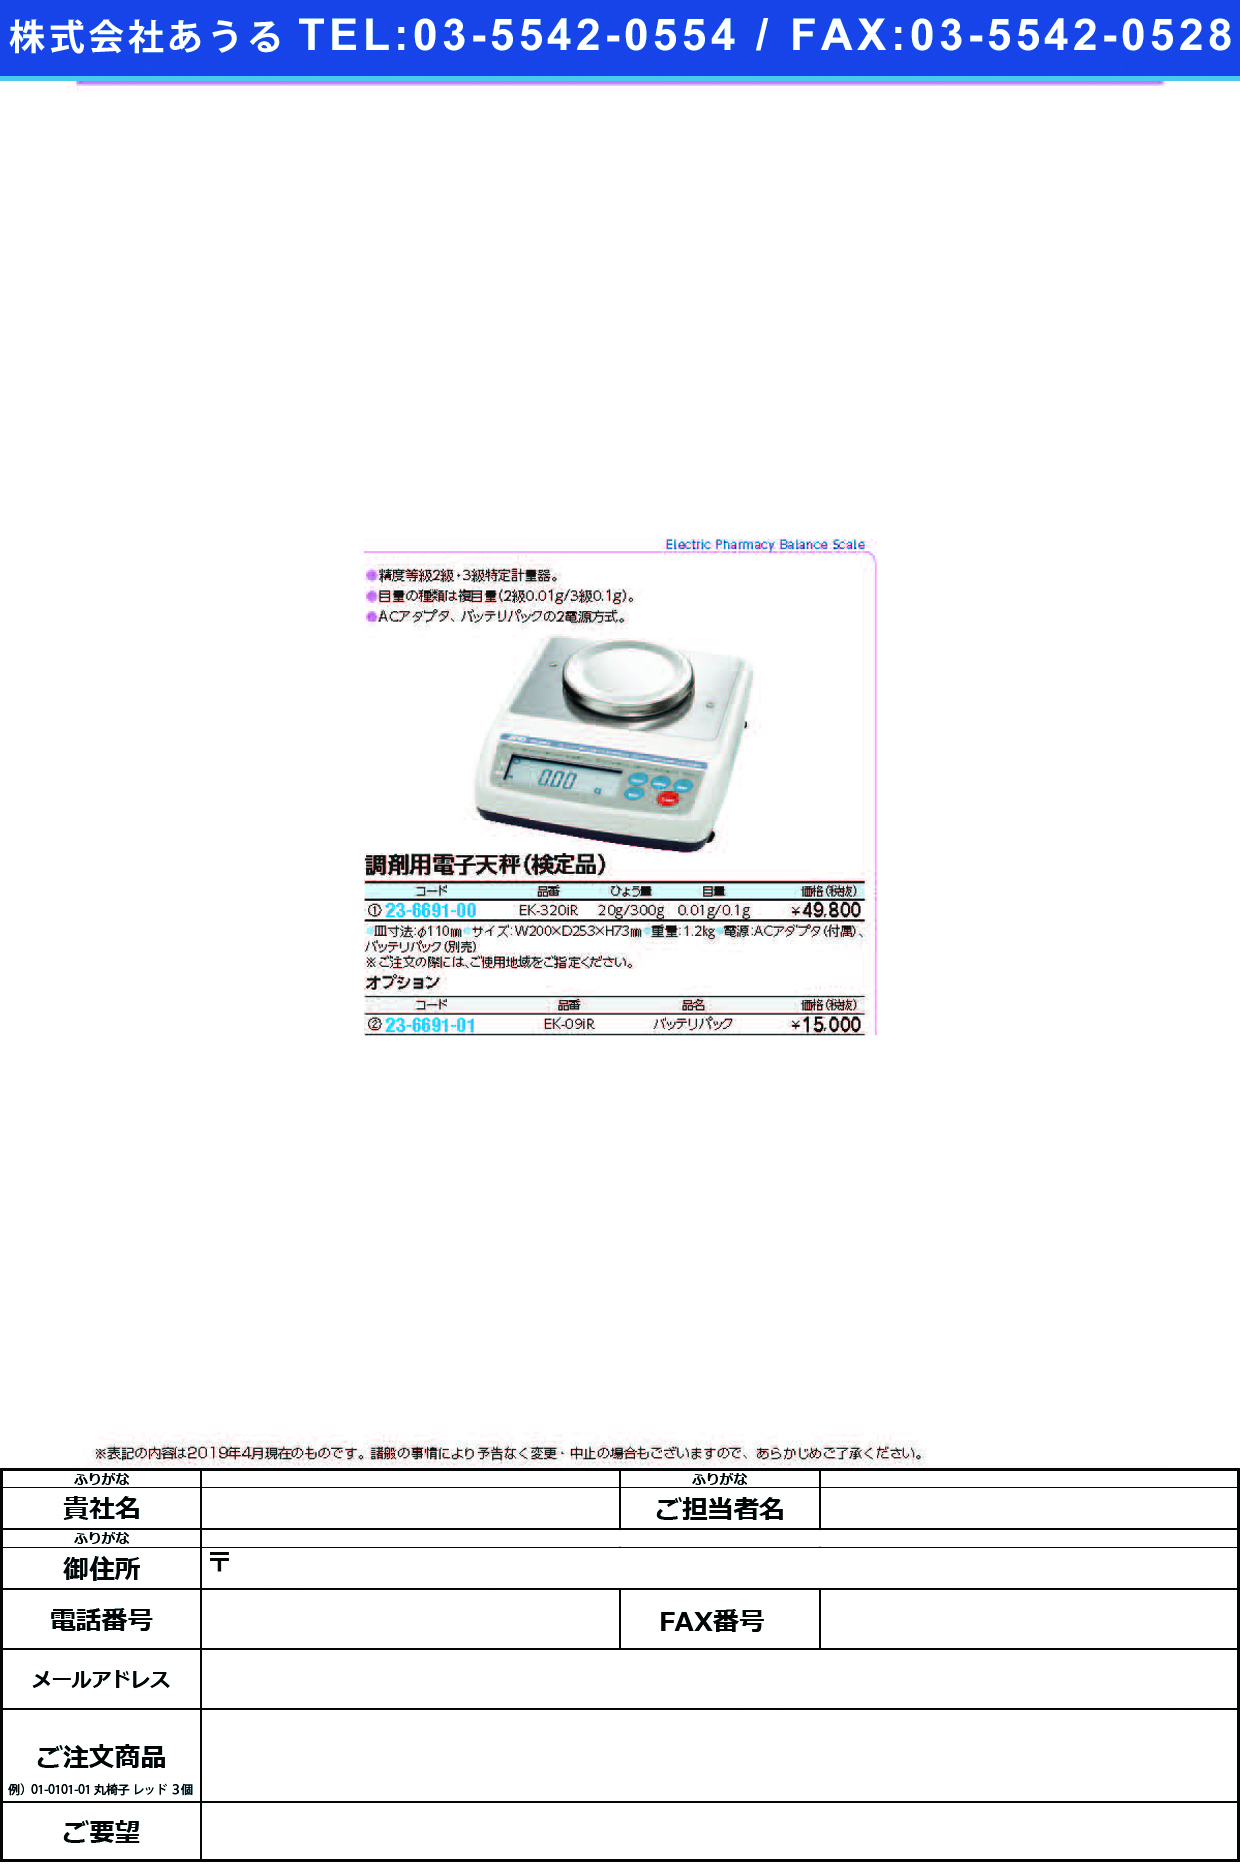 (23-6691-00)調剤用電子天秤（検定品） EK-320IR ﾃﾞﾝｼﾃﾝﾋﾞﾝ(ｹﾝﾃｲﾋﾝ)【1台単位】【2019年カタログ商品】